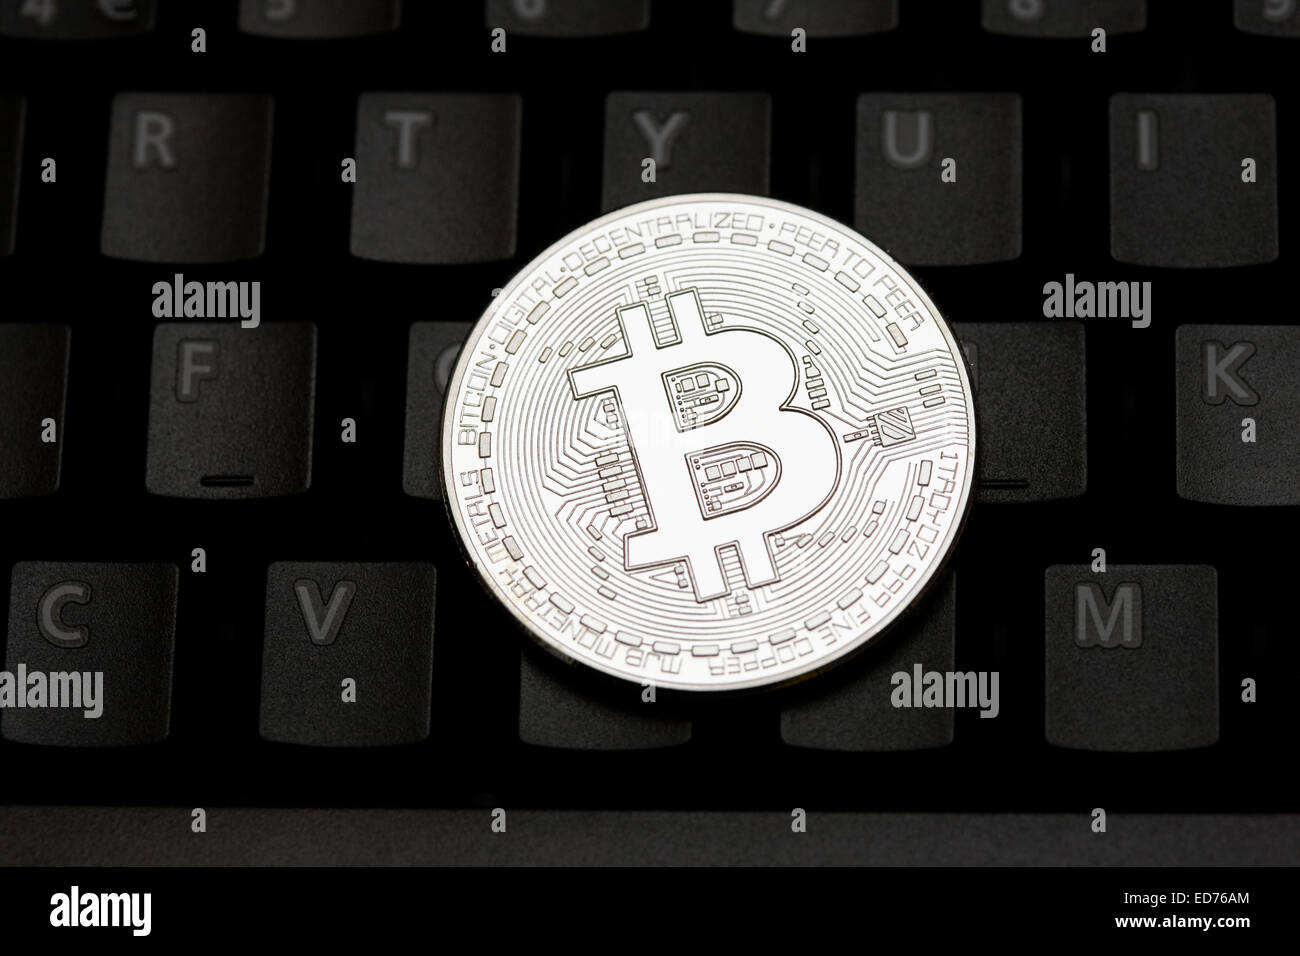 Bitcoin moneta virtuale sulla tastiera di un computer Foto Stock